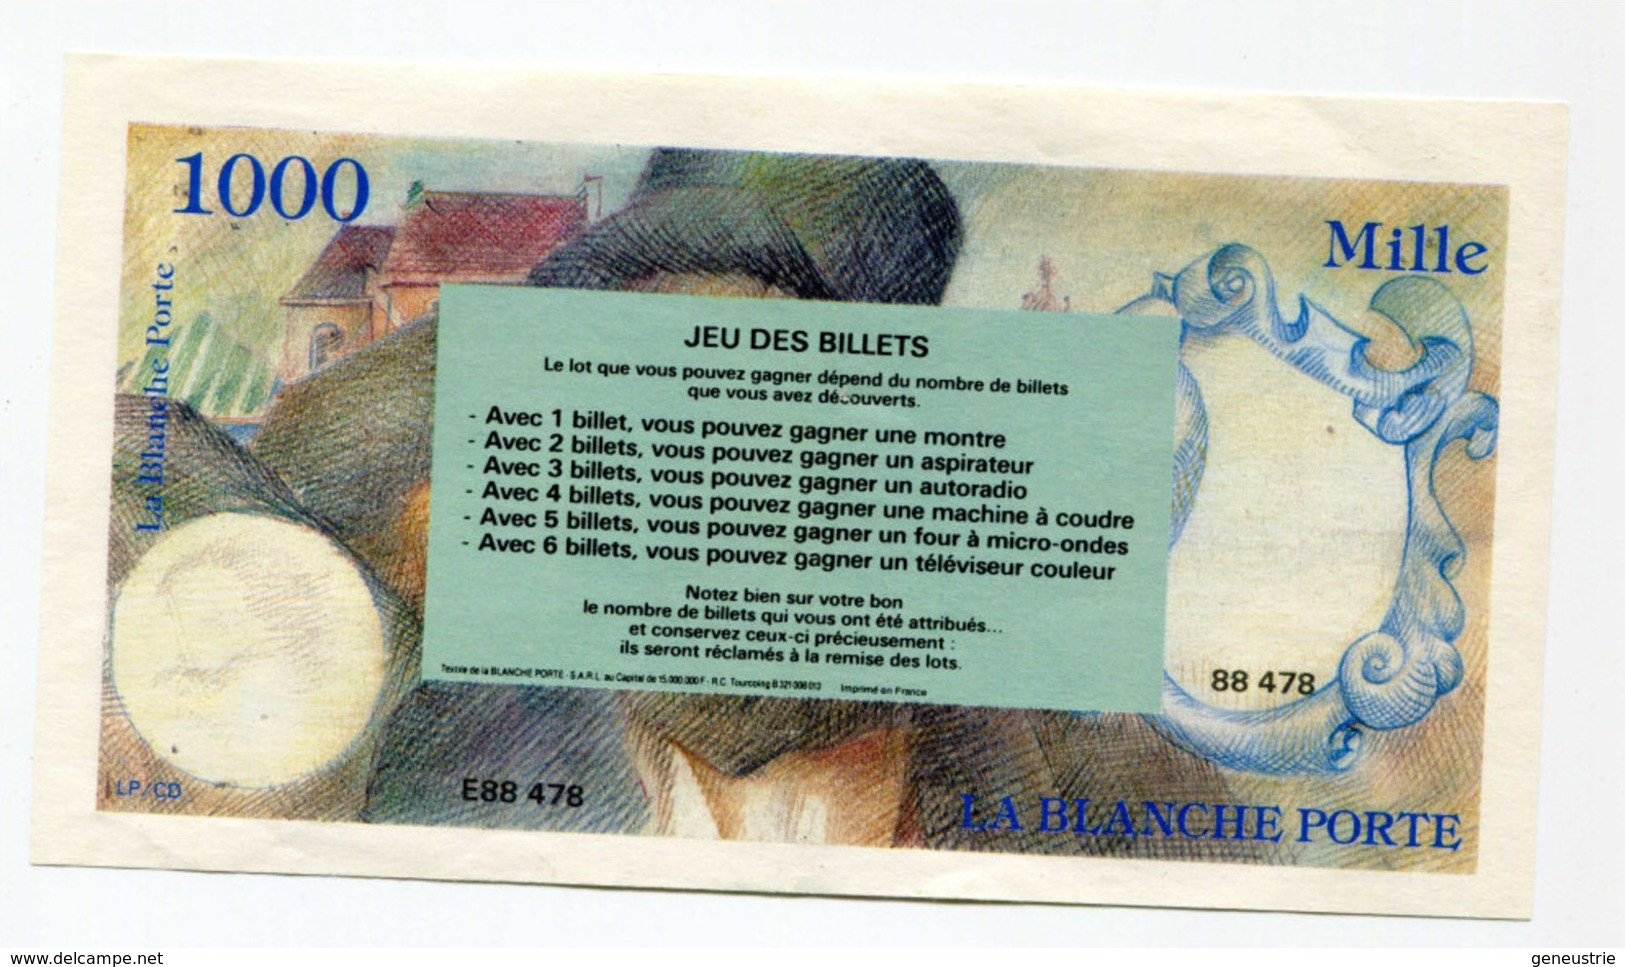 Billet Publicitaire De 1000 Francs Inspiré De Delacroix "La Blanche Porte" French Bank Note - Ficción & Especímenes